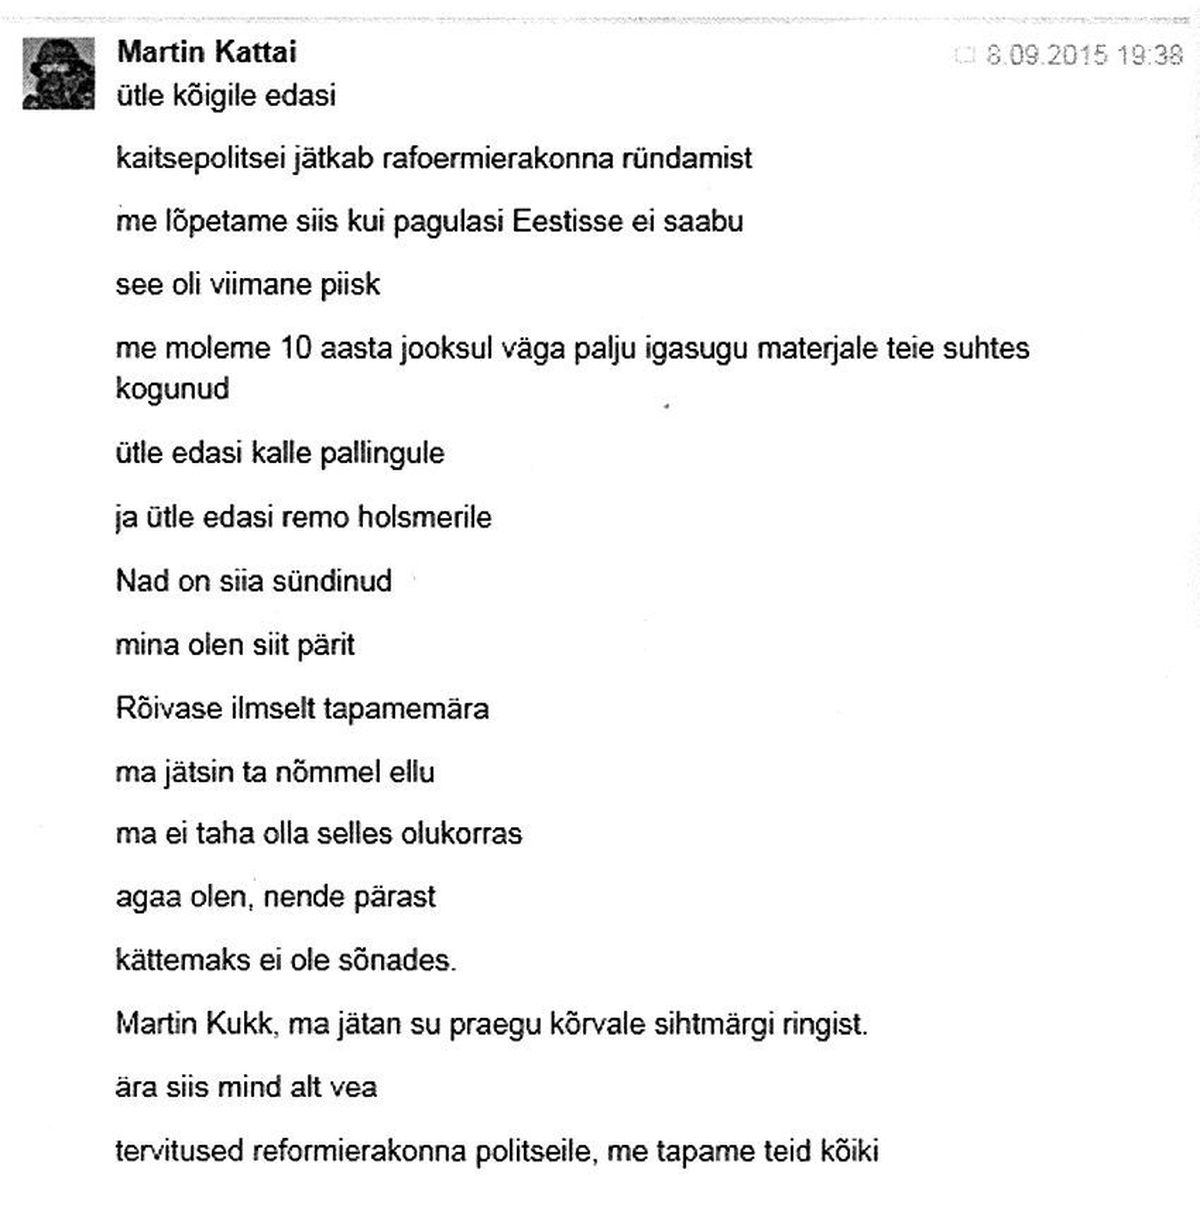 Sellise sõnumi edastas Martin Kattai Reformierakonna peasekretärile Martin Kukele Facebookis 8. septembril 2015.